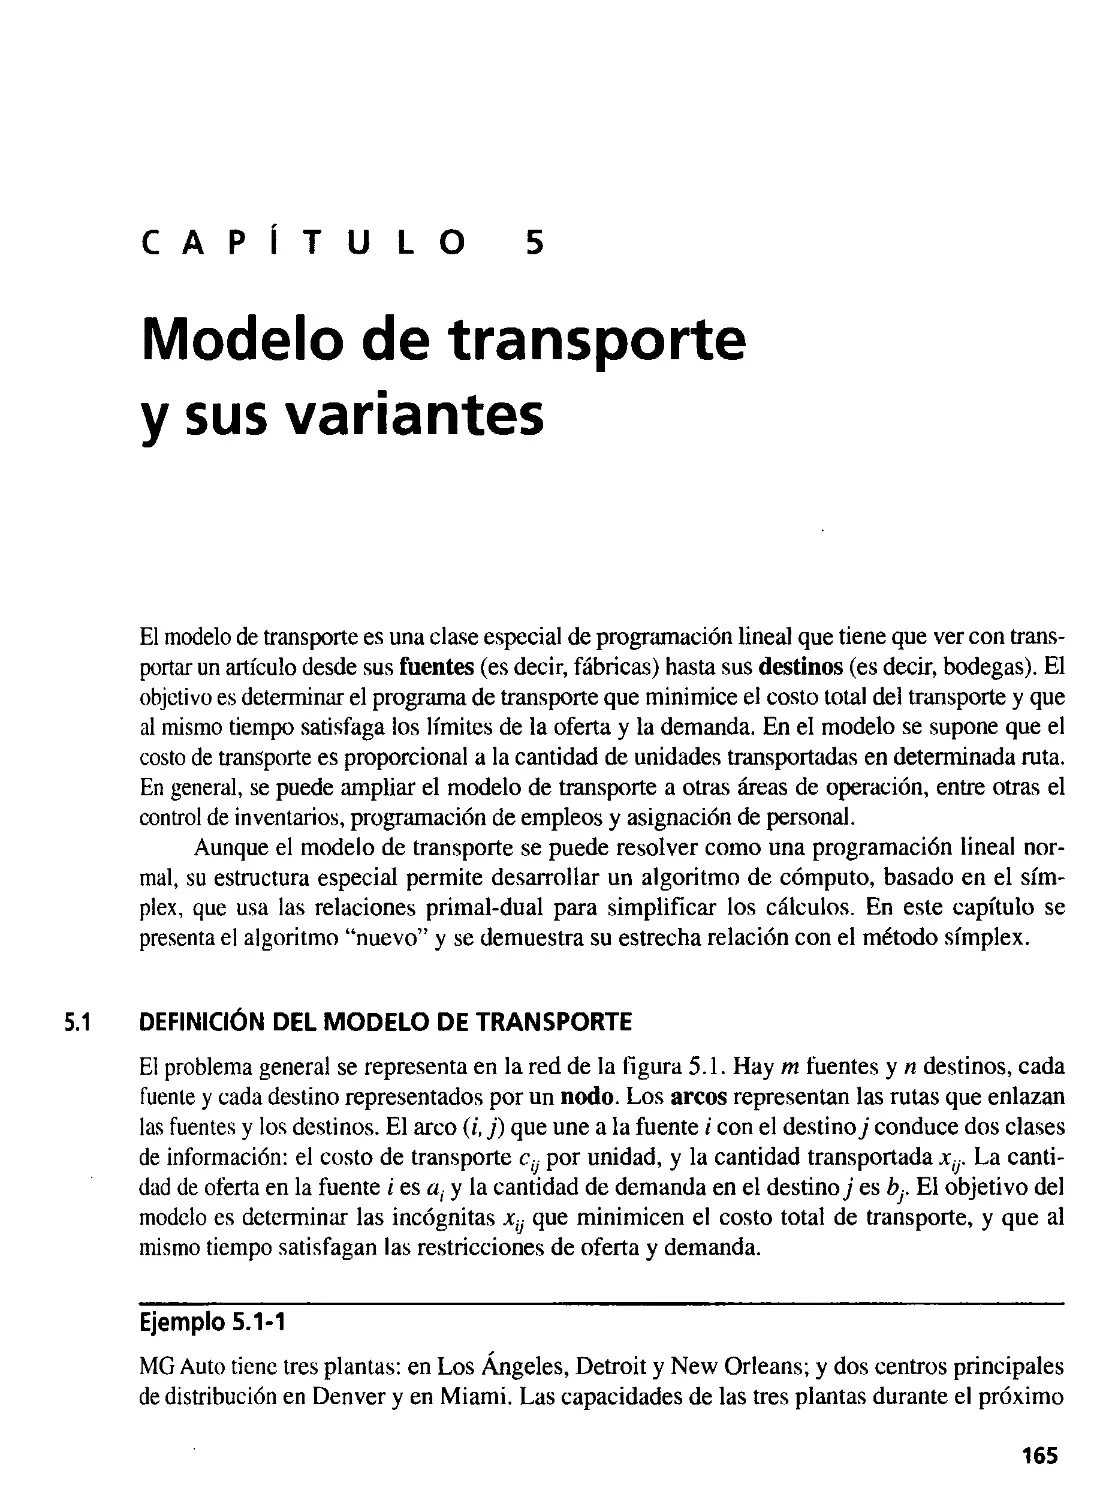 5. Modelo de transporte y sus variantes